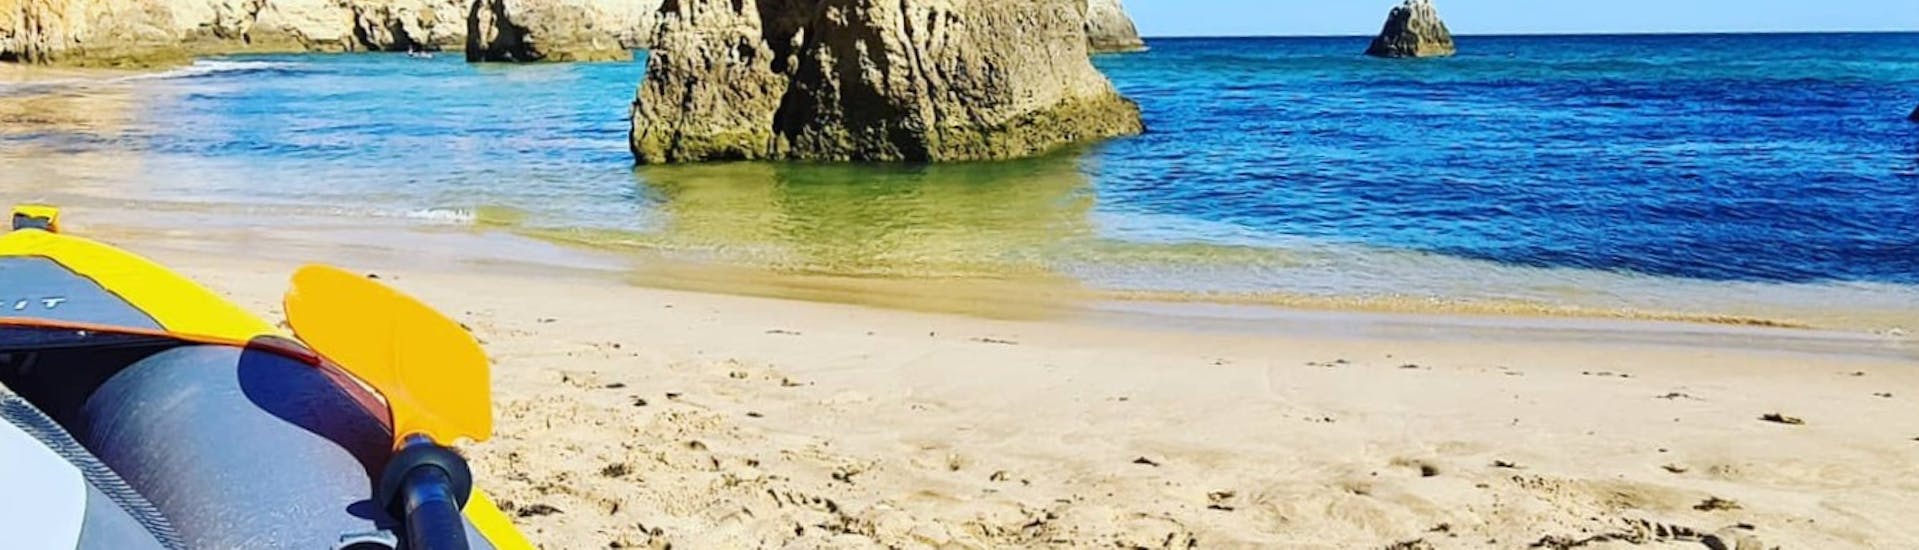 Kajak liegt an einem versteckten Strand beim Kajak Verleih am Benagil Strand mit Algarve Discovery.